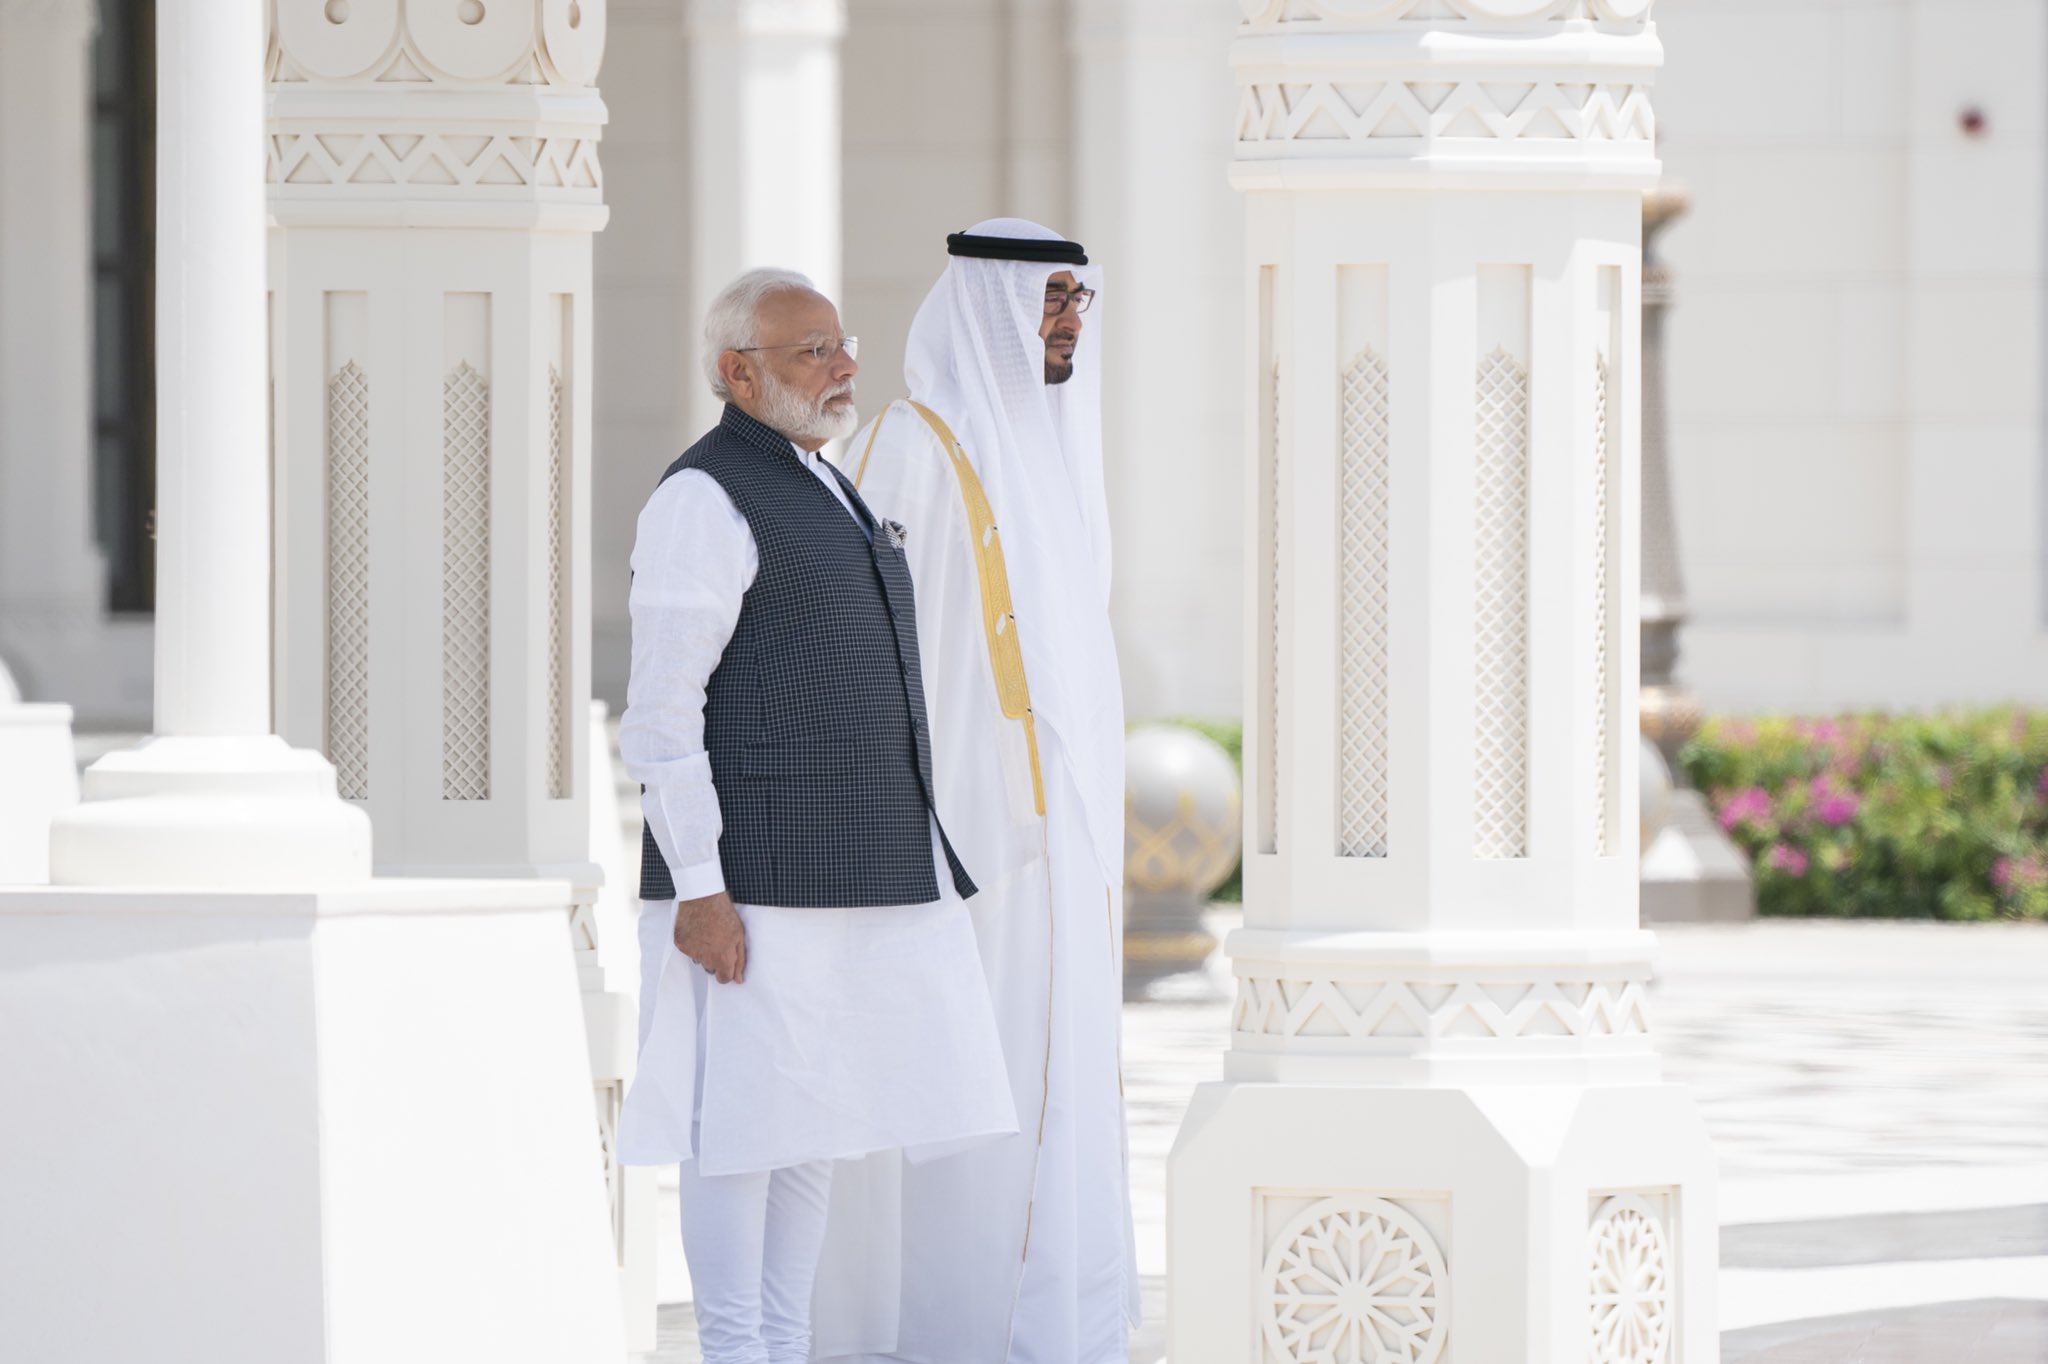 भारत और संयुक्त अरब अमीरात के तेजी से मजबूत होते रिश्तों का गवाह रहा साल 2020